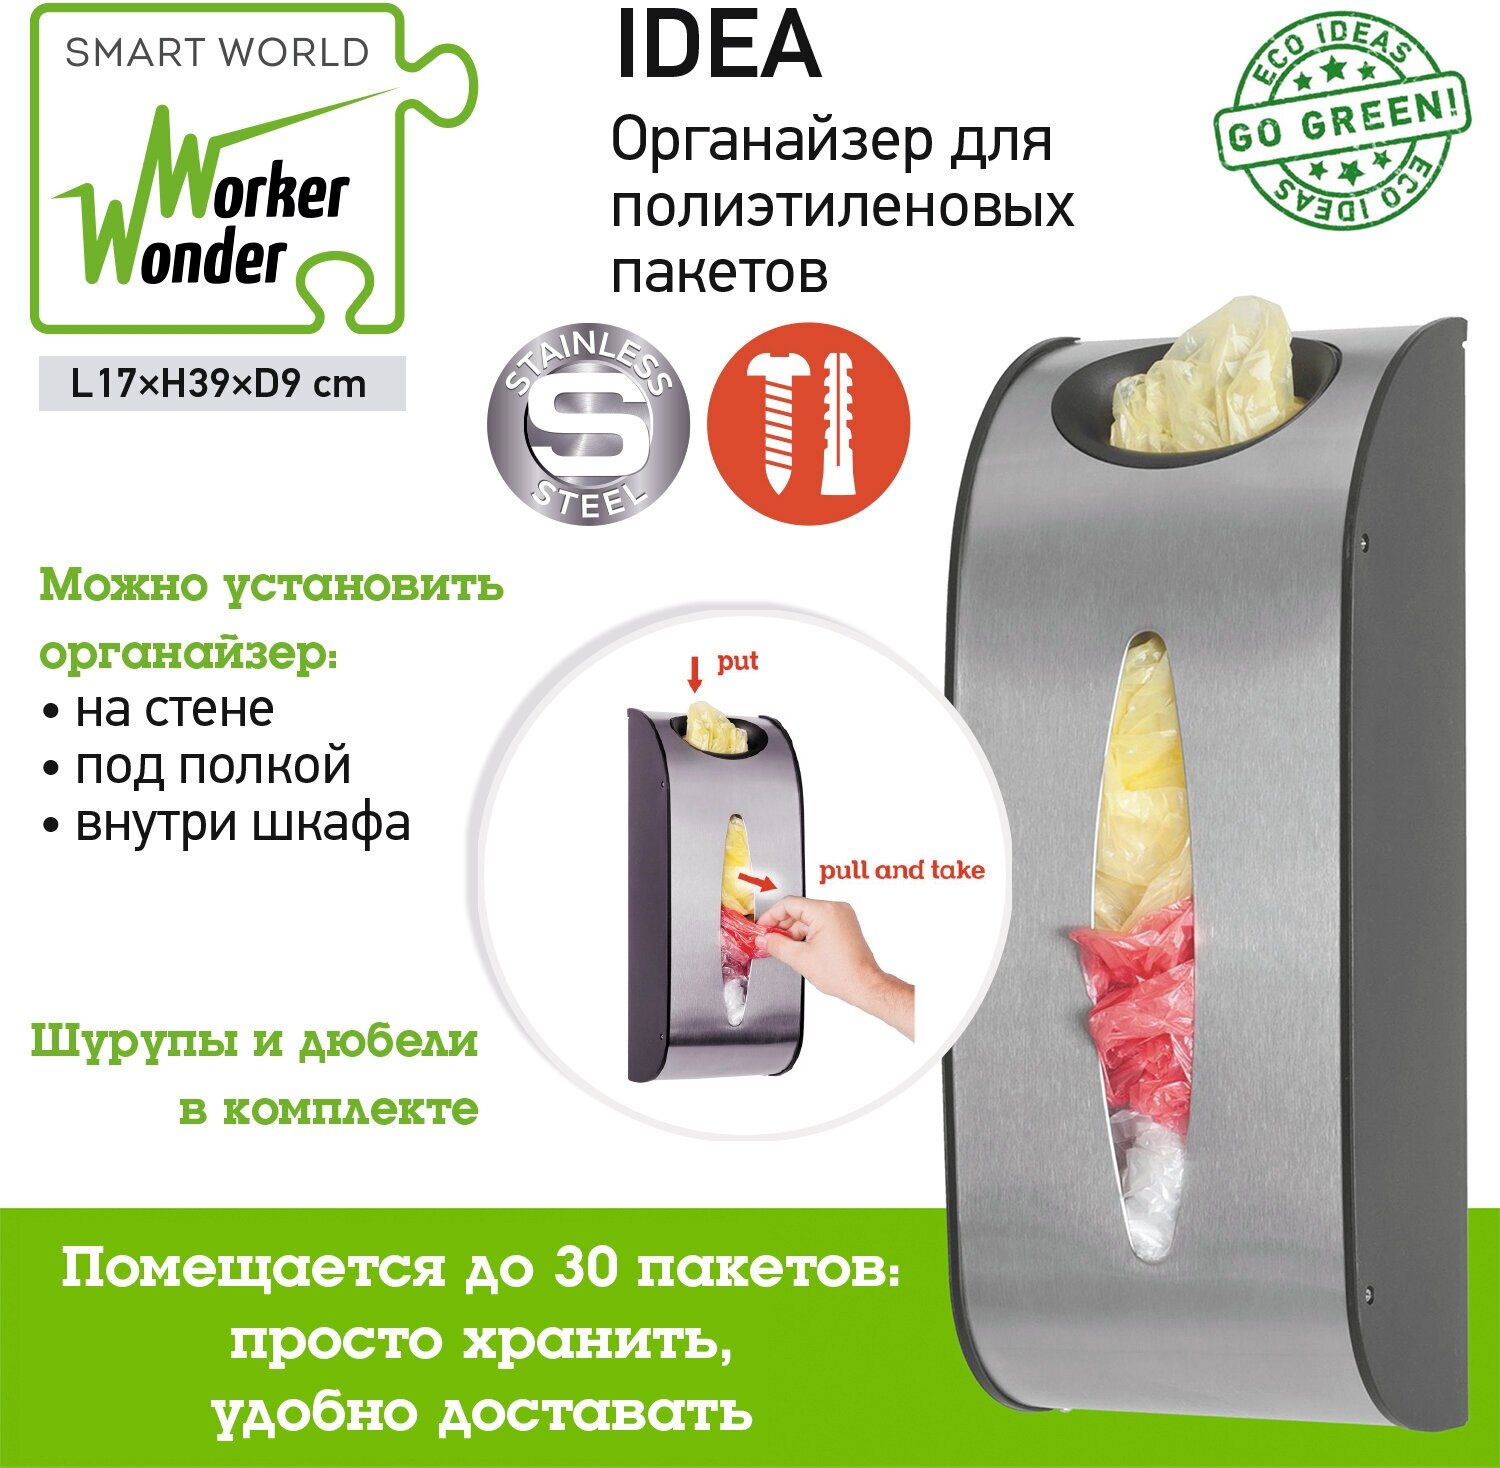 Корзина для пакетов, держатель кухонный, органайзер Wonder Worker IDEA, настенный - фотография № 6